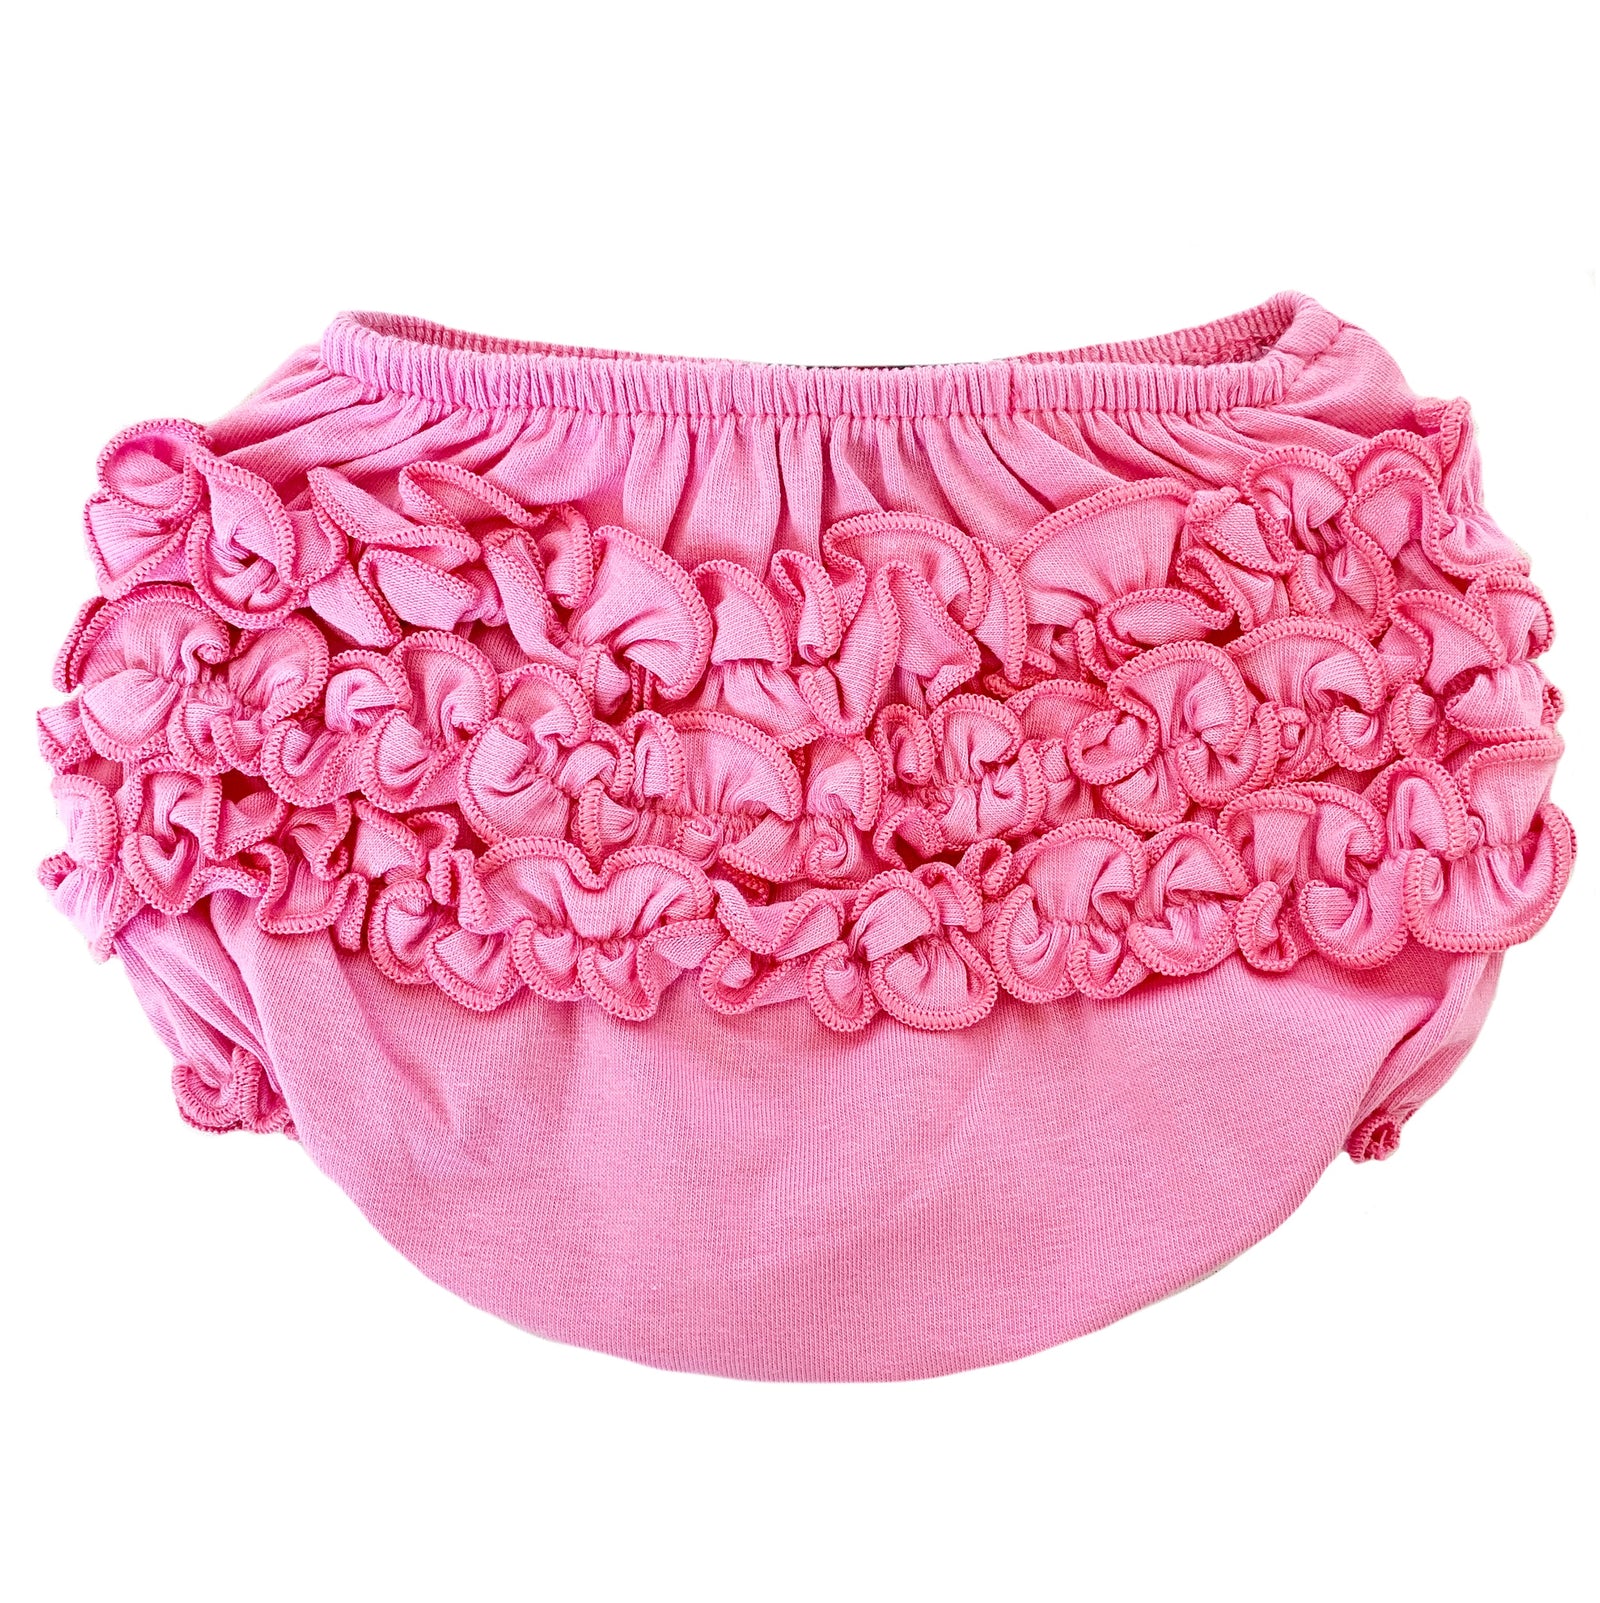 AnnLoren Baby & Toddler Girls Pink Knit Ruffled Butt Bloomer Diaper Cover (3-24 Mo)